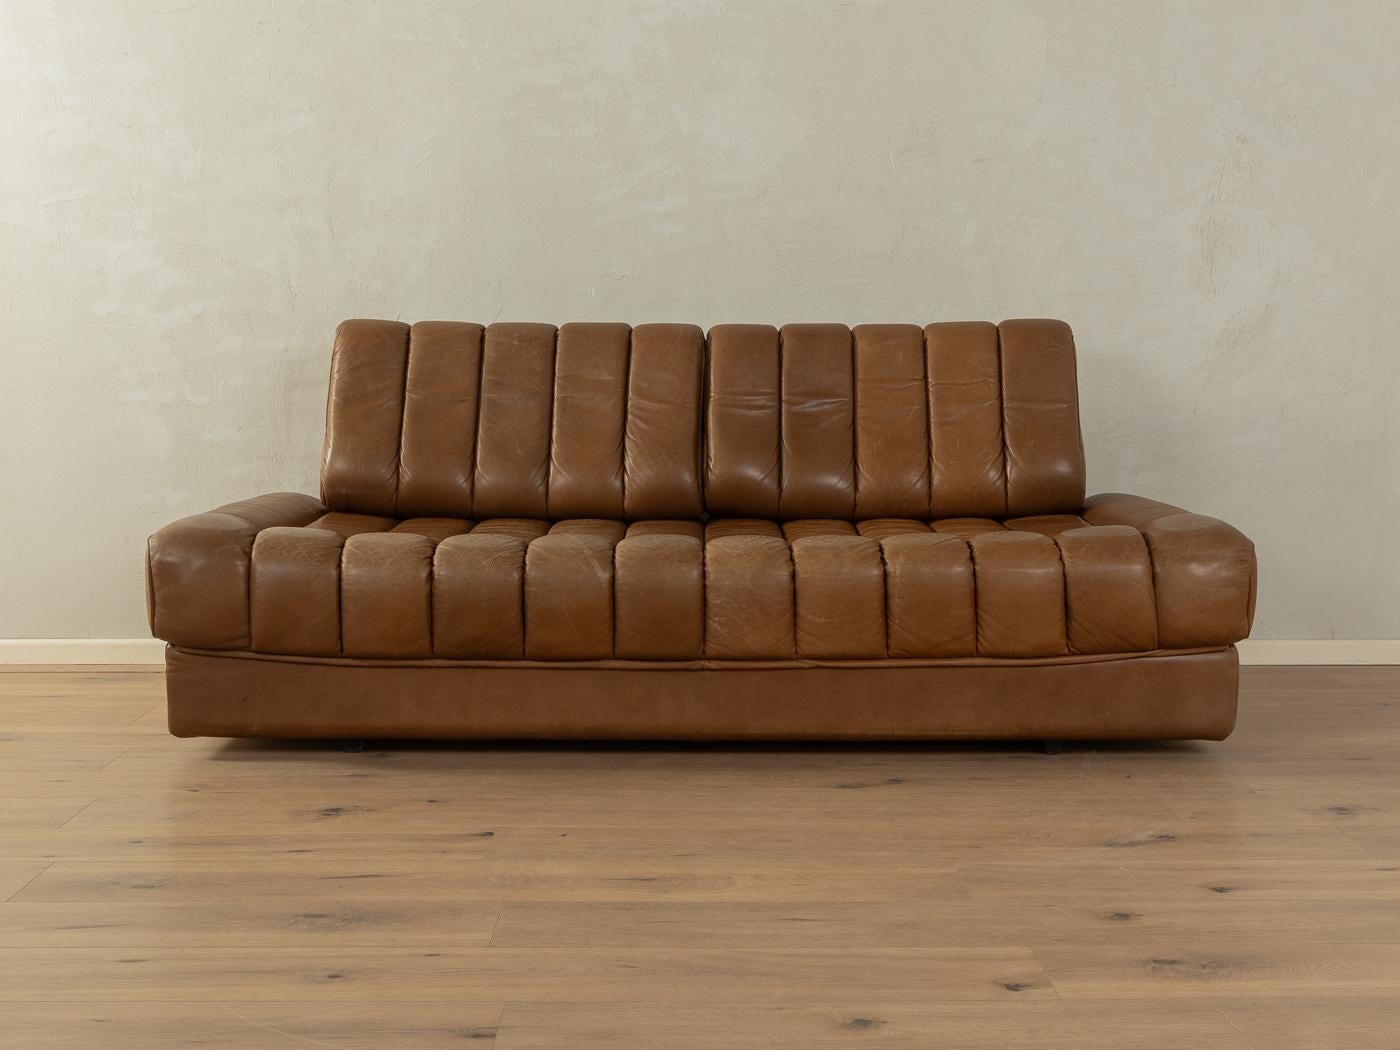  Convertible sofa, de Sede, DS-85  3